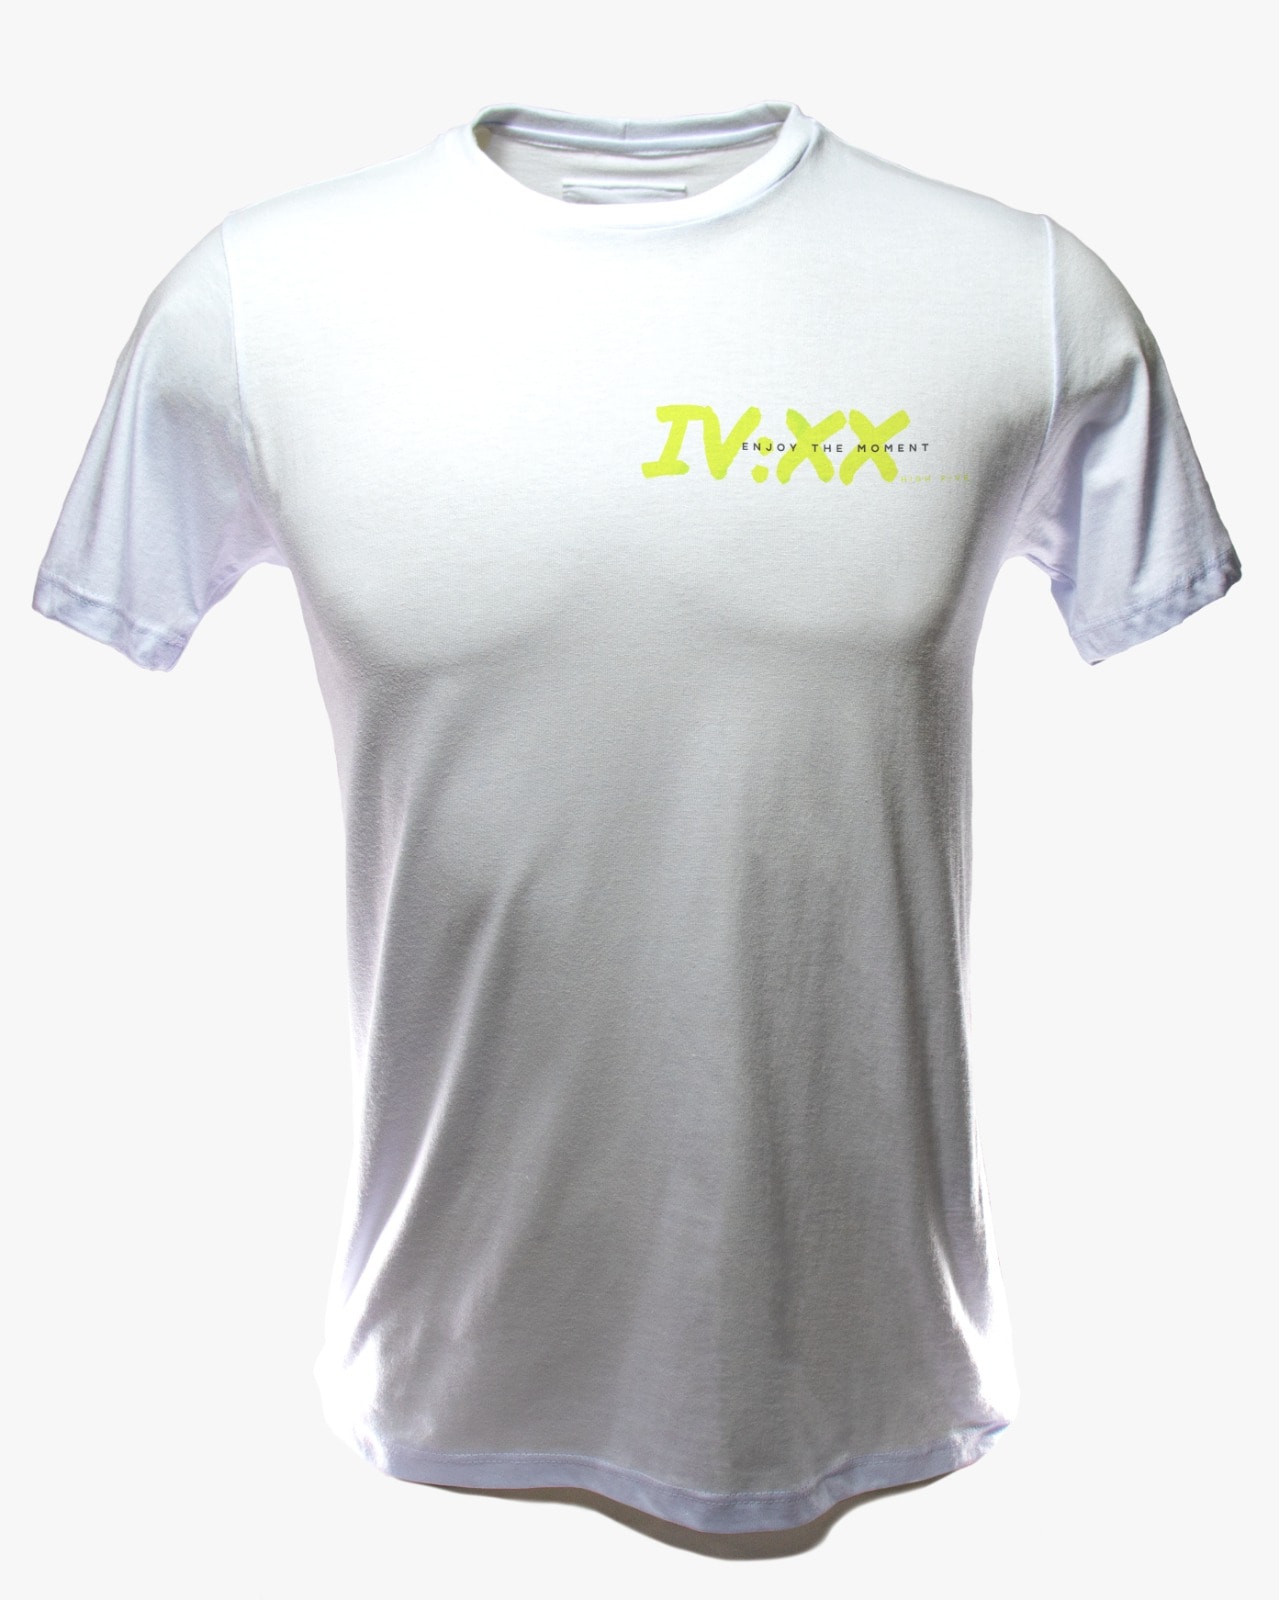 Camiseta Maconha – 420 IV XX – Enjoy the moment